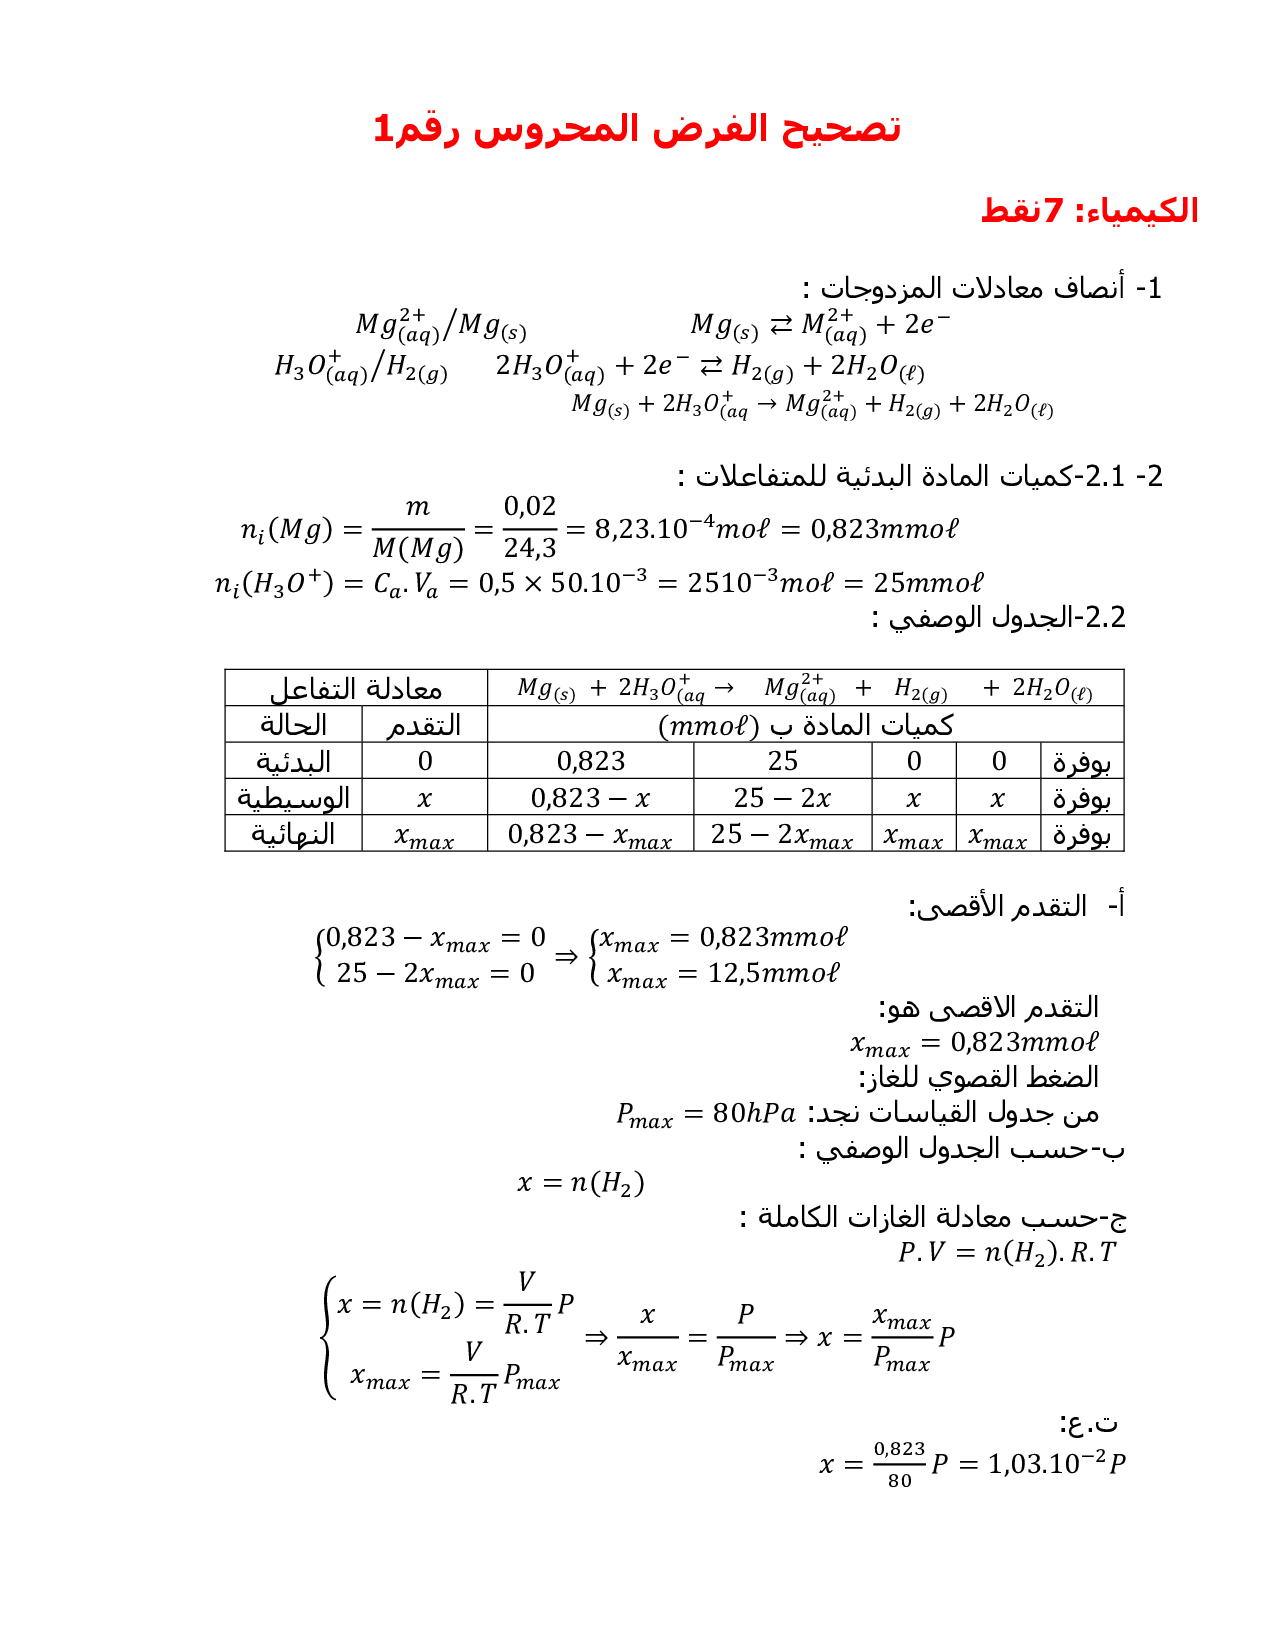 كيمياء 2 مقررات pdf كتاب تحميل تحميل كتاب